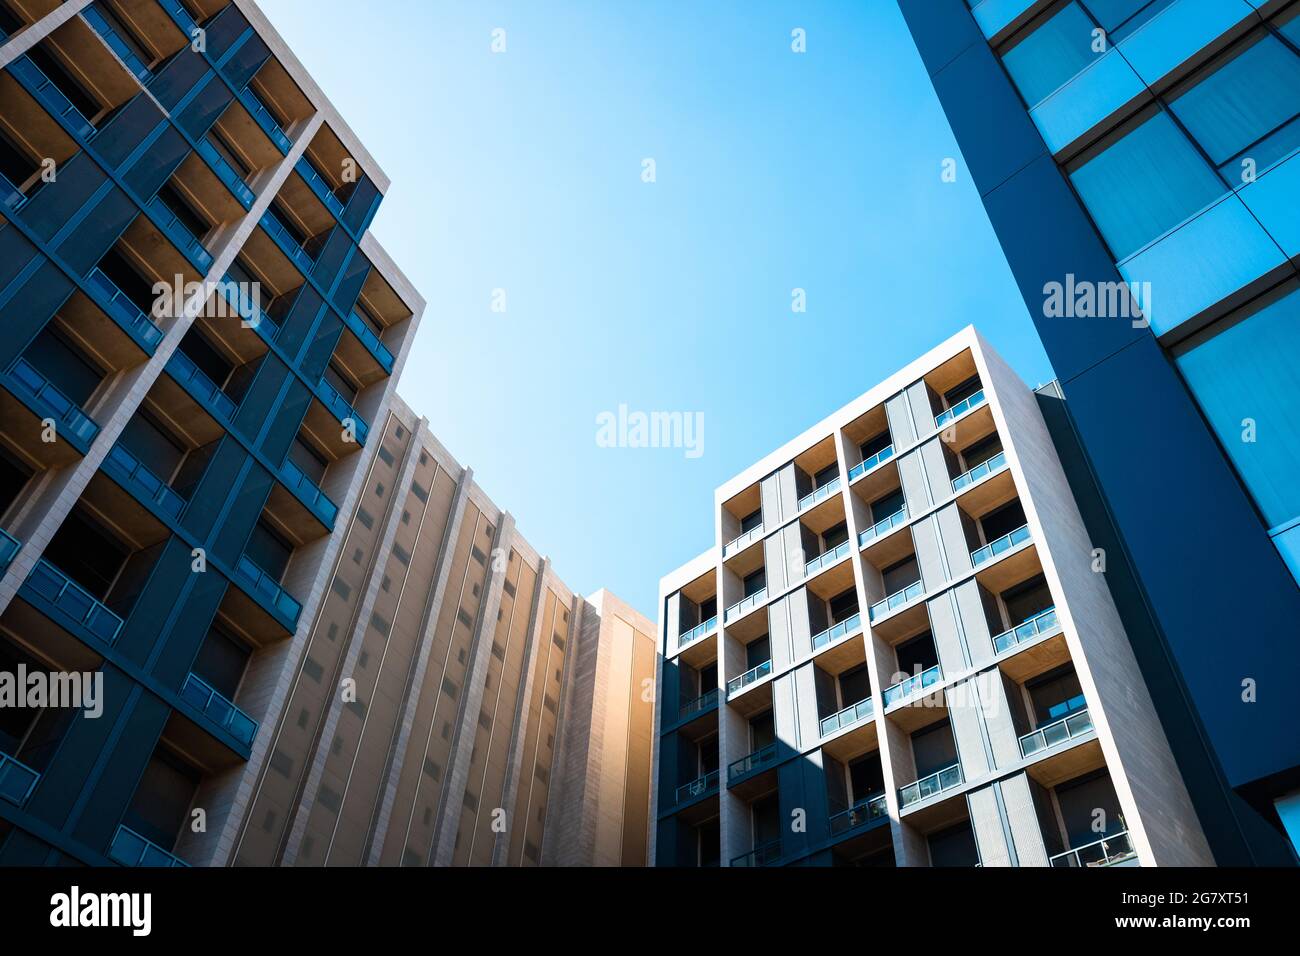 Bâtiments résidentiels dans un quartier calme avec un pouvoir d'achat élevé, vu d'en dessous. Banque D'Images